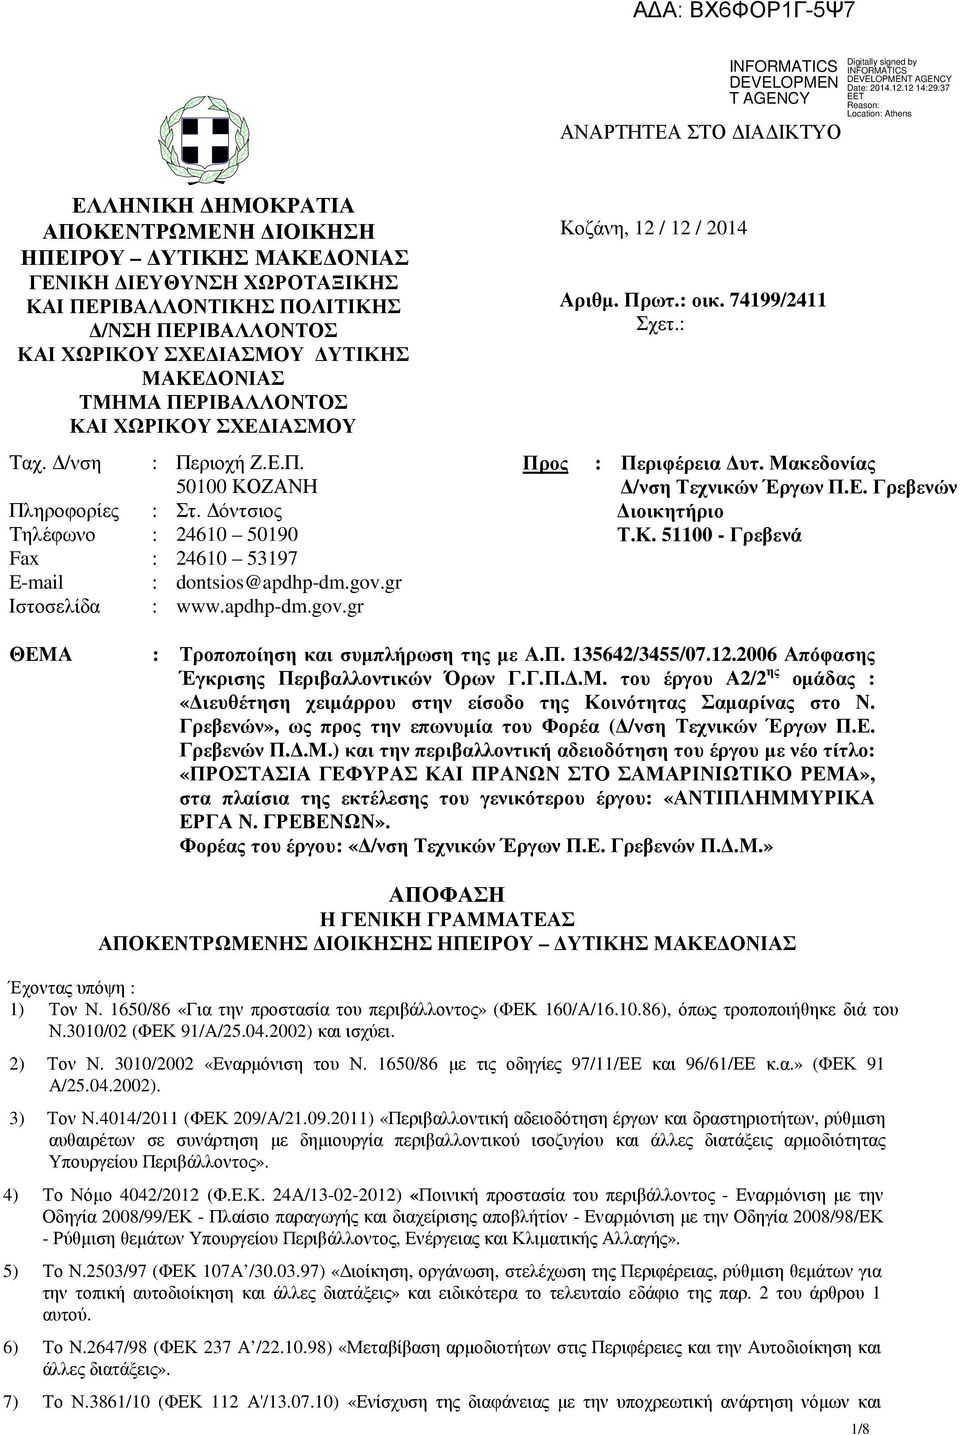 gr Ιστοσελίδα : www.apdhp-dm.gov.gr Προς Κοζάνη, 12 / 12 / 2014 Αριθµ. Πρωτ.: οικ. 74199/2411 Σχετ.: : Περιφέρεια υτ. Μακεδονίας /νση Τεχνικών Έργων Π.Ε. Γρεβενών ιοικητήριο Τ.Κ. 51100 - Γρεβενά ΘΕΜΑ : Τροποποίηση και συµπλήρωση της µε Α.